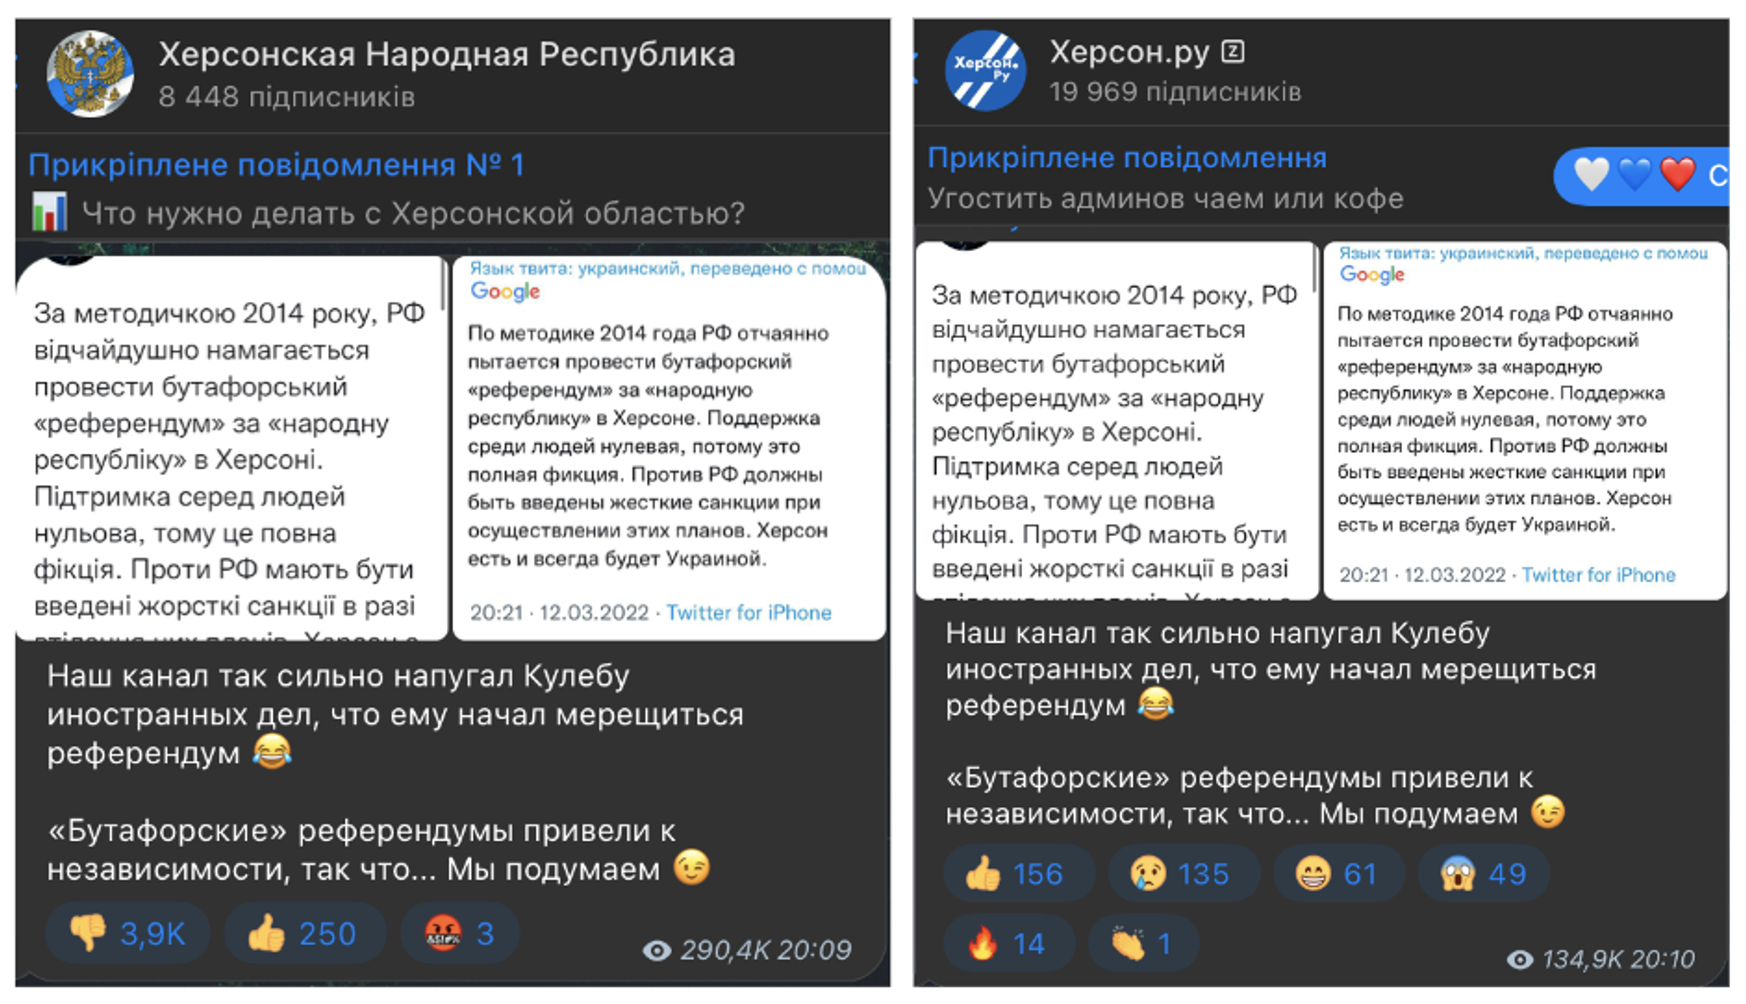 Как телеграмм перевести на русский язык айфон фото 60